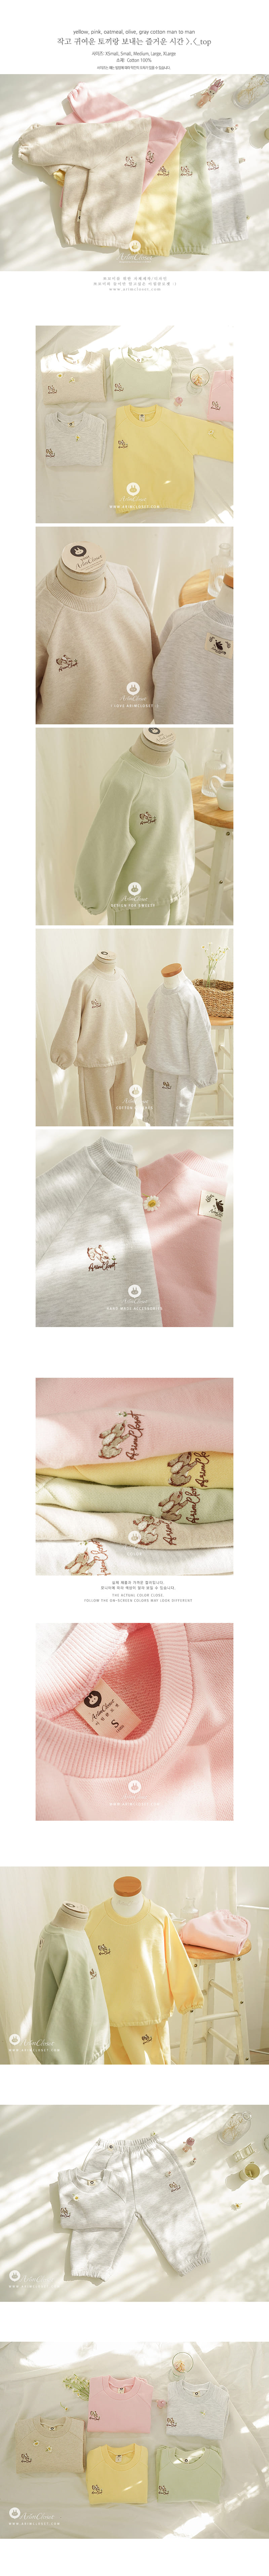 Arim Closet - Korean Children Fashion - #todddlerfashion - Cute Rabbit Sweatshirt - 2